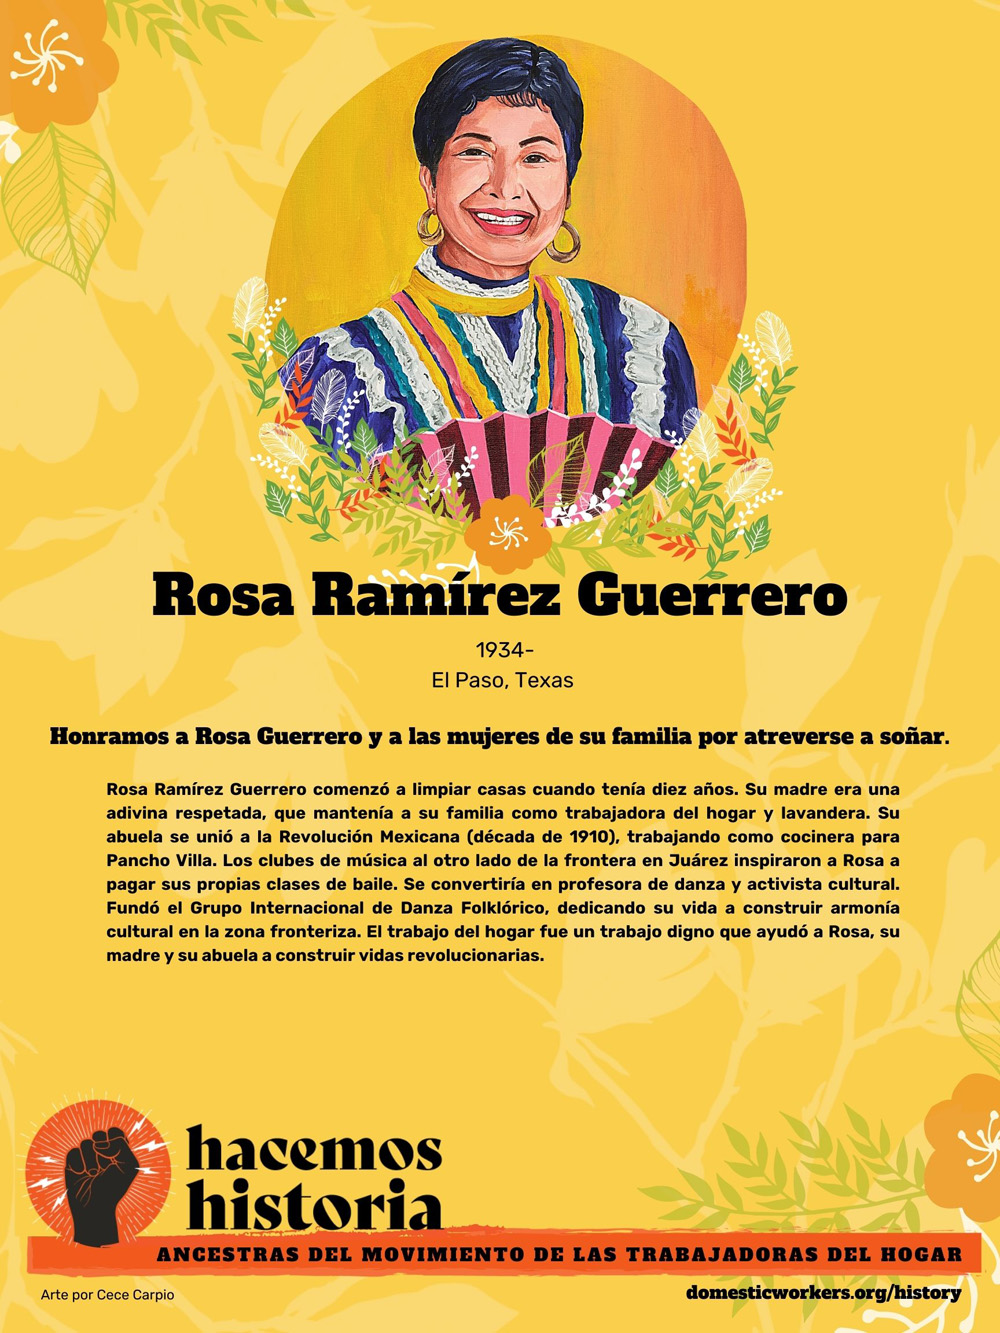 Retratos de las ancestras del movimiento de trabajadoras de hogar: Rosa Ramirez Guerrero